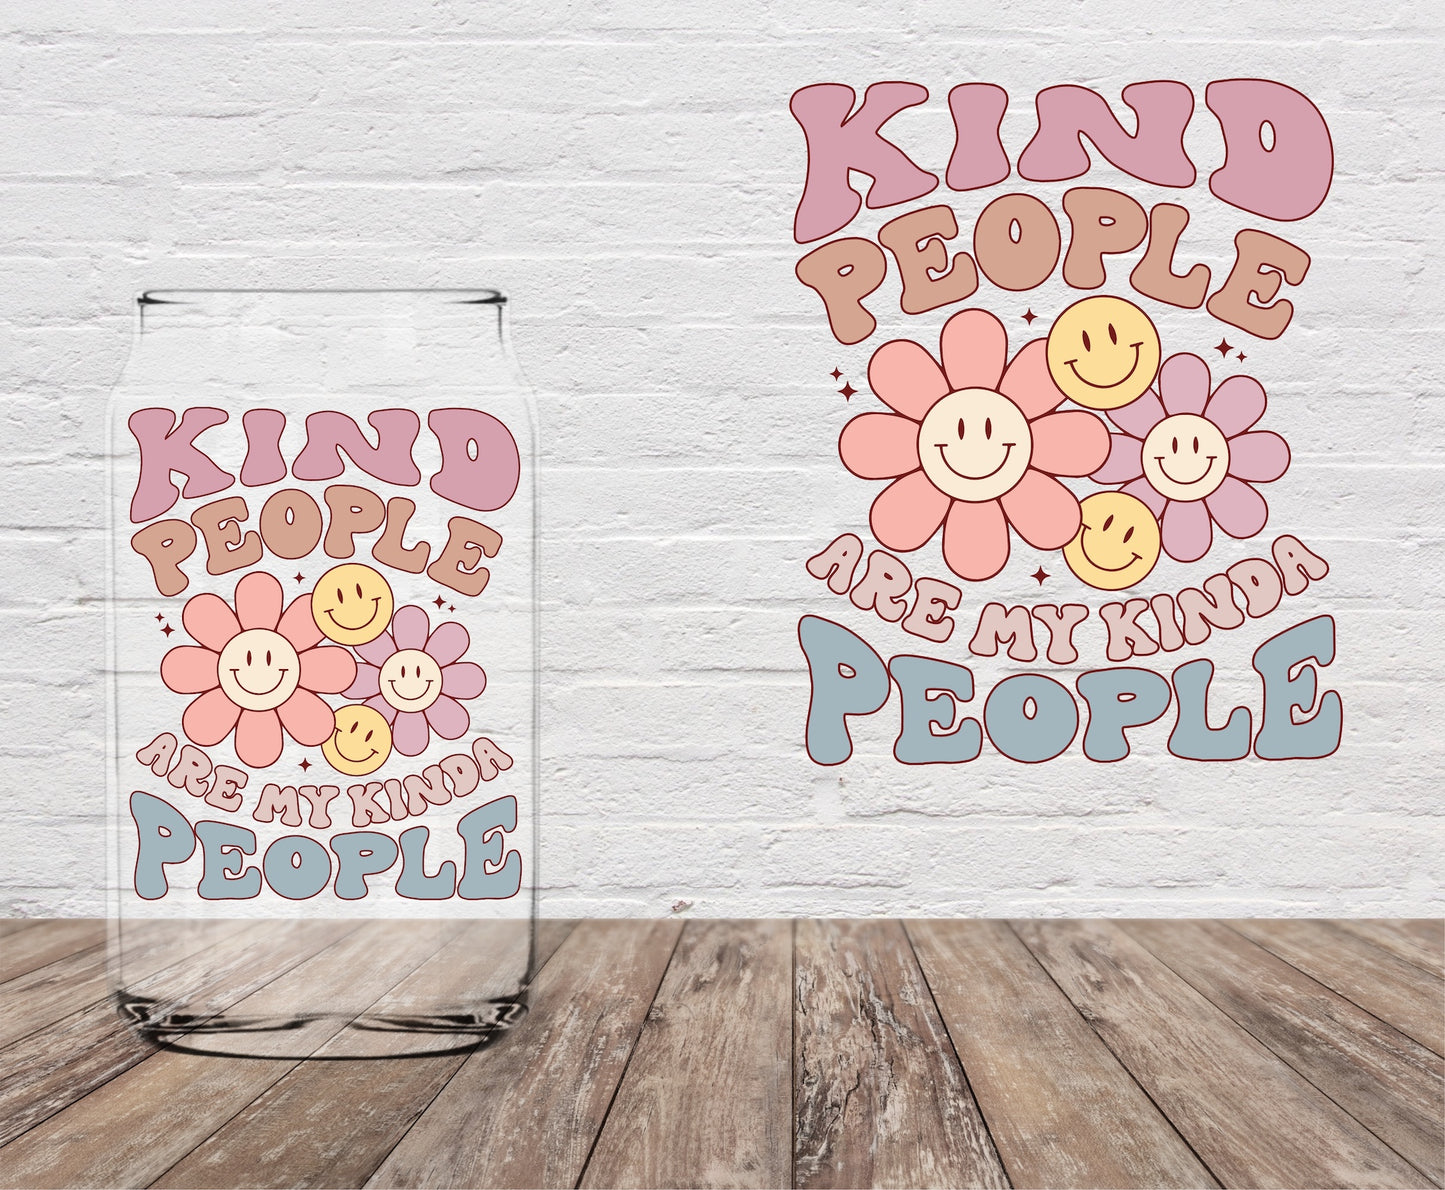 Kind People are My Kind of People 4" UV DTF